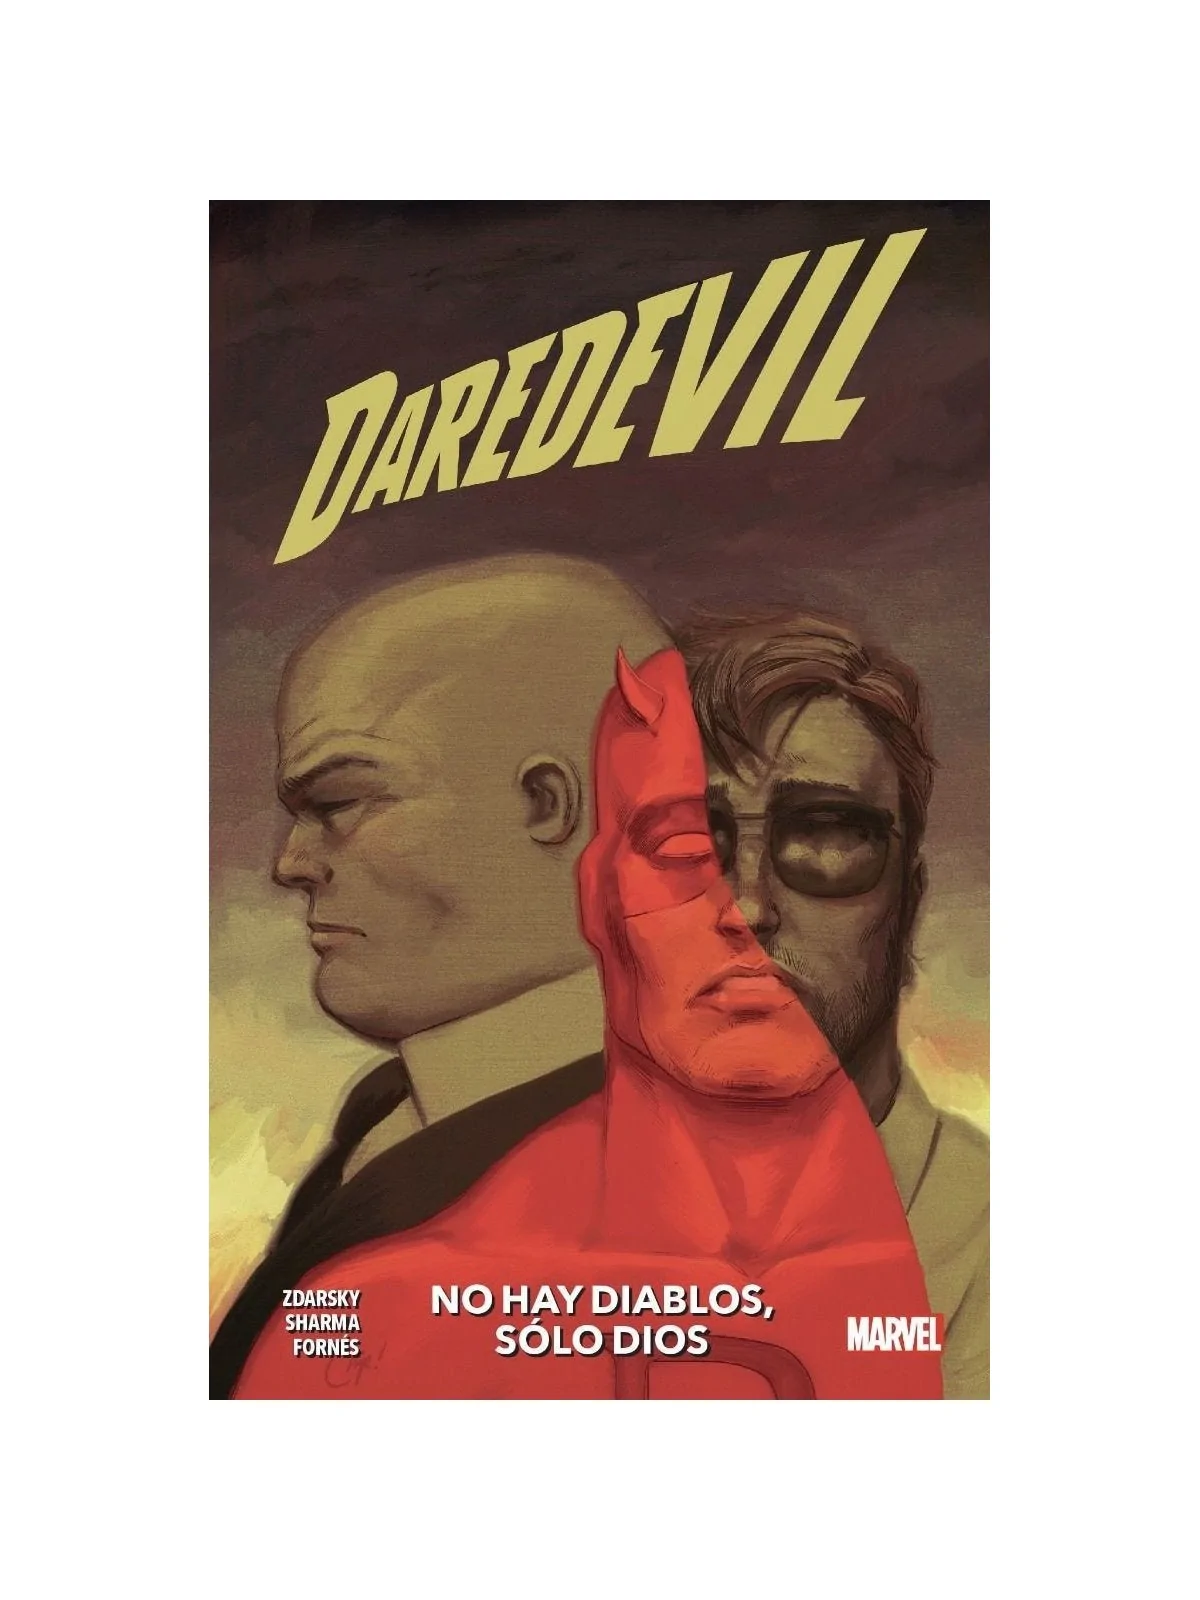 Comprar Marvel Premiere: Daredevil 2 barato al mejor precio 8,45 € de 